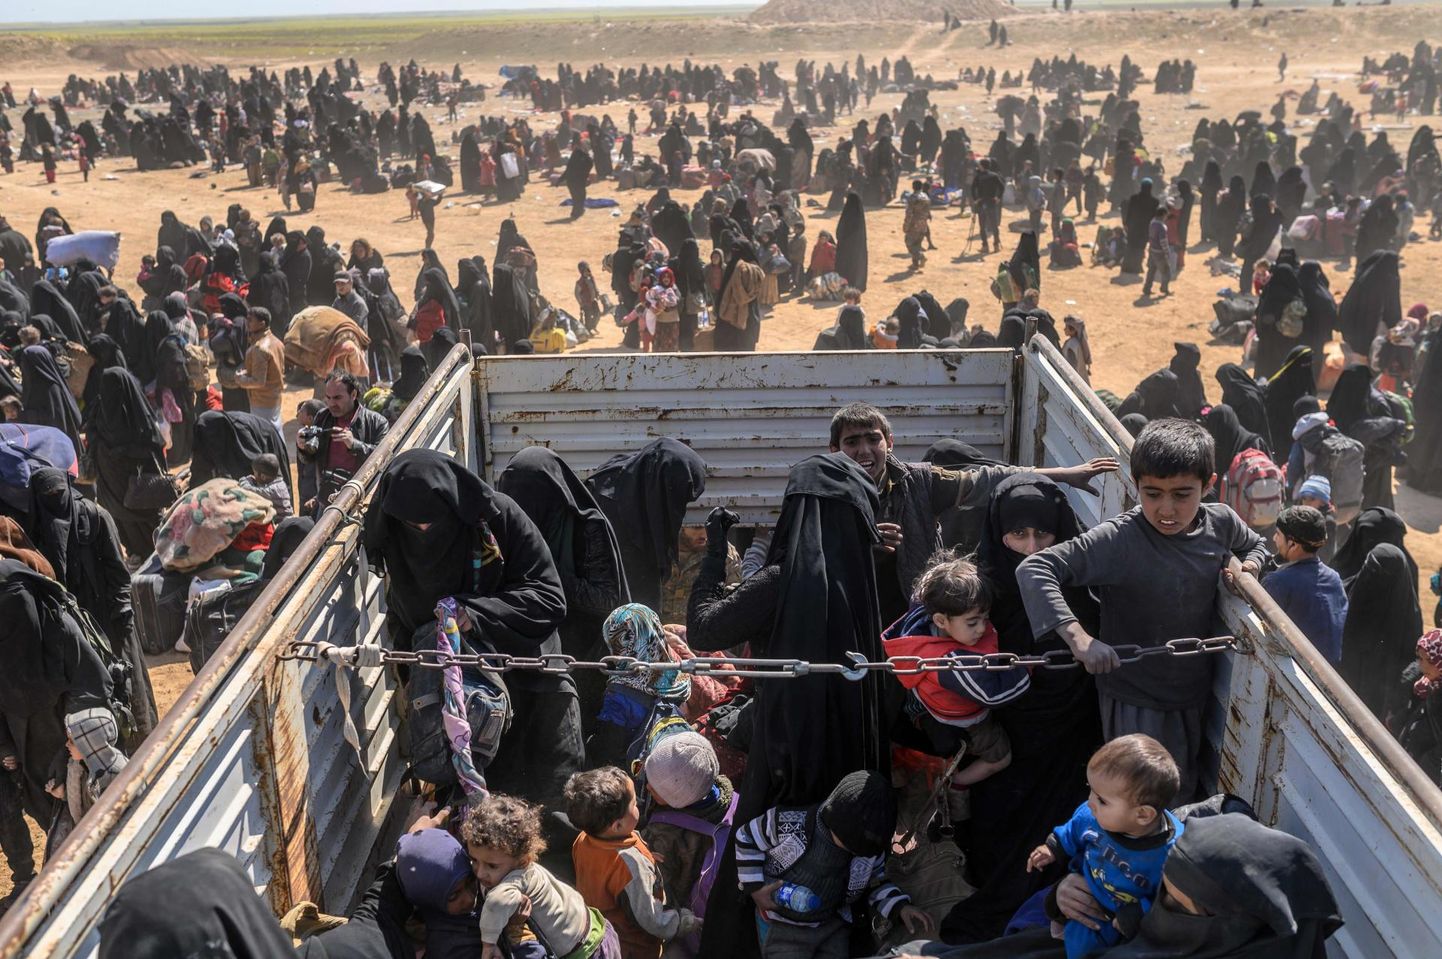 ISISe viimasest kantsist Süürias põgenenud tsiviilelanikud. Samast linnast evakueeriti ka soomlanna Sanna ja tema pere. 